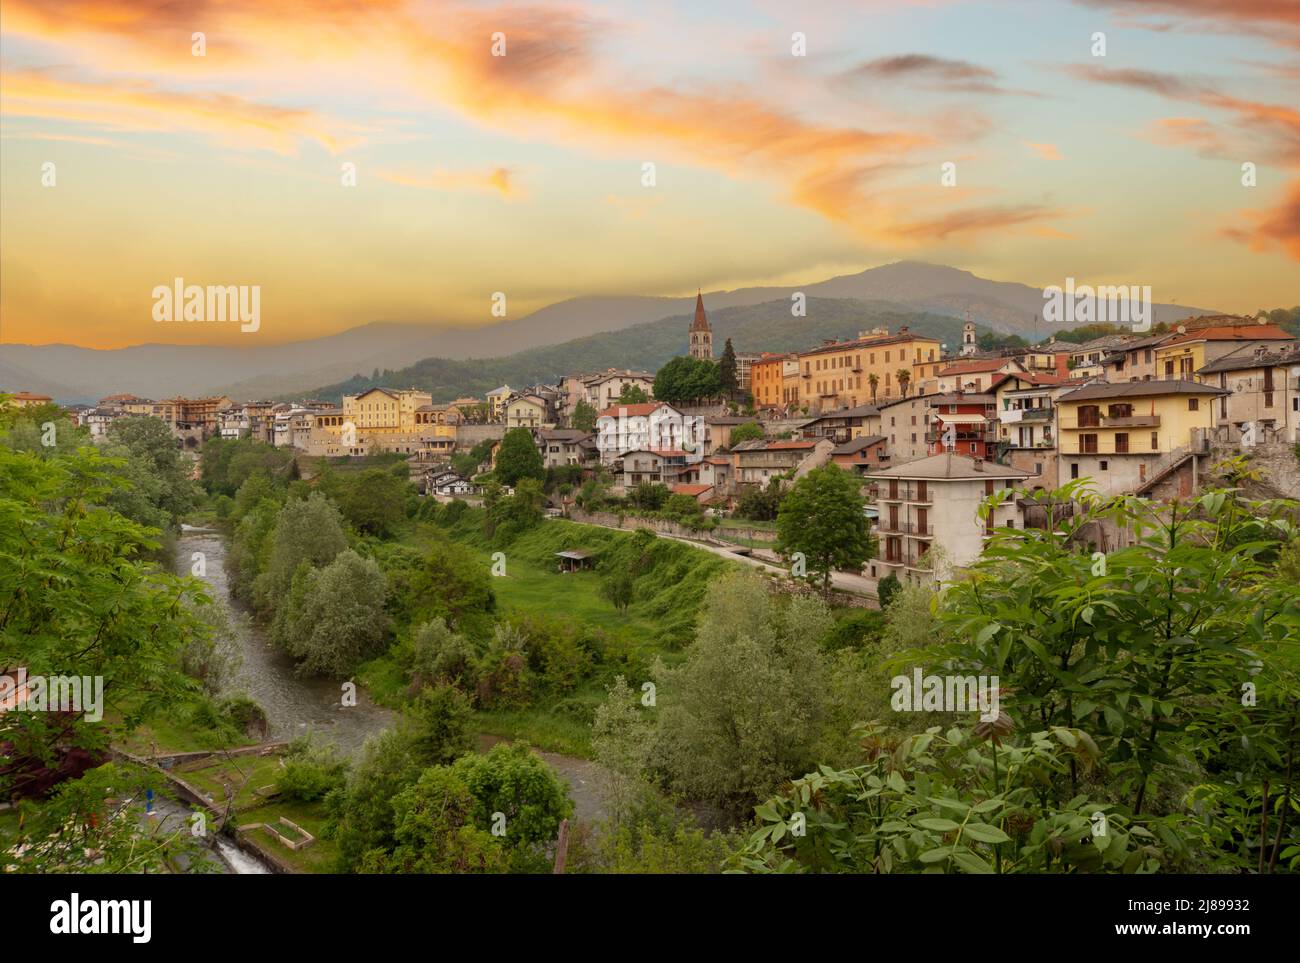 Dronero, Piemont, Italien: Blick auf das alte Dorf im Maira-Tal mit dem Fluss Maira. Landschaft mit bunt bewölktem Sonnenuntergang Himmel Stockfoto